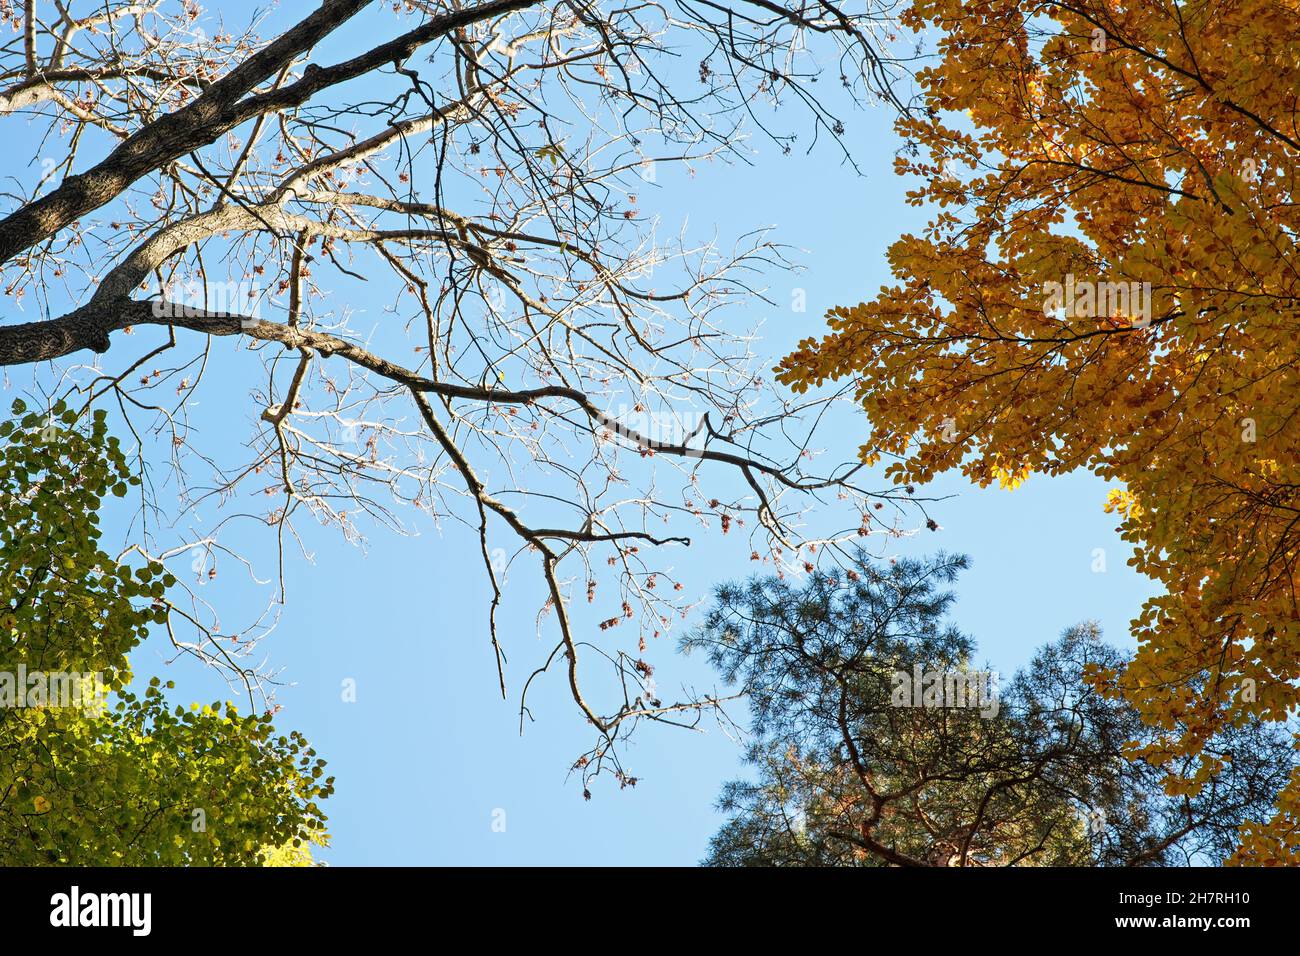 Recherche de branches d'arbres avec des feuilles en automne, contre ciel bleu clair - pin, hêtre orange, bouleau vert et un sans feuillage Banque D'Images